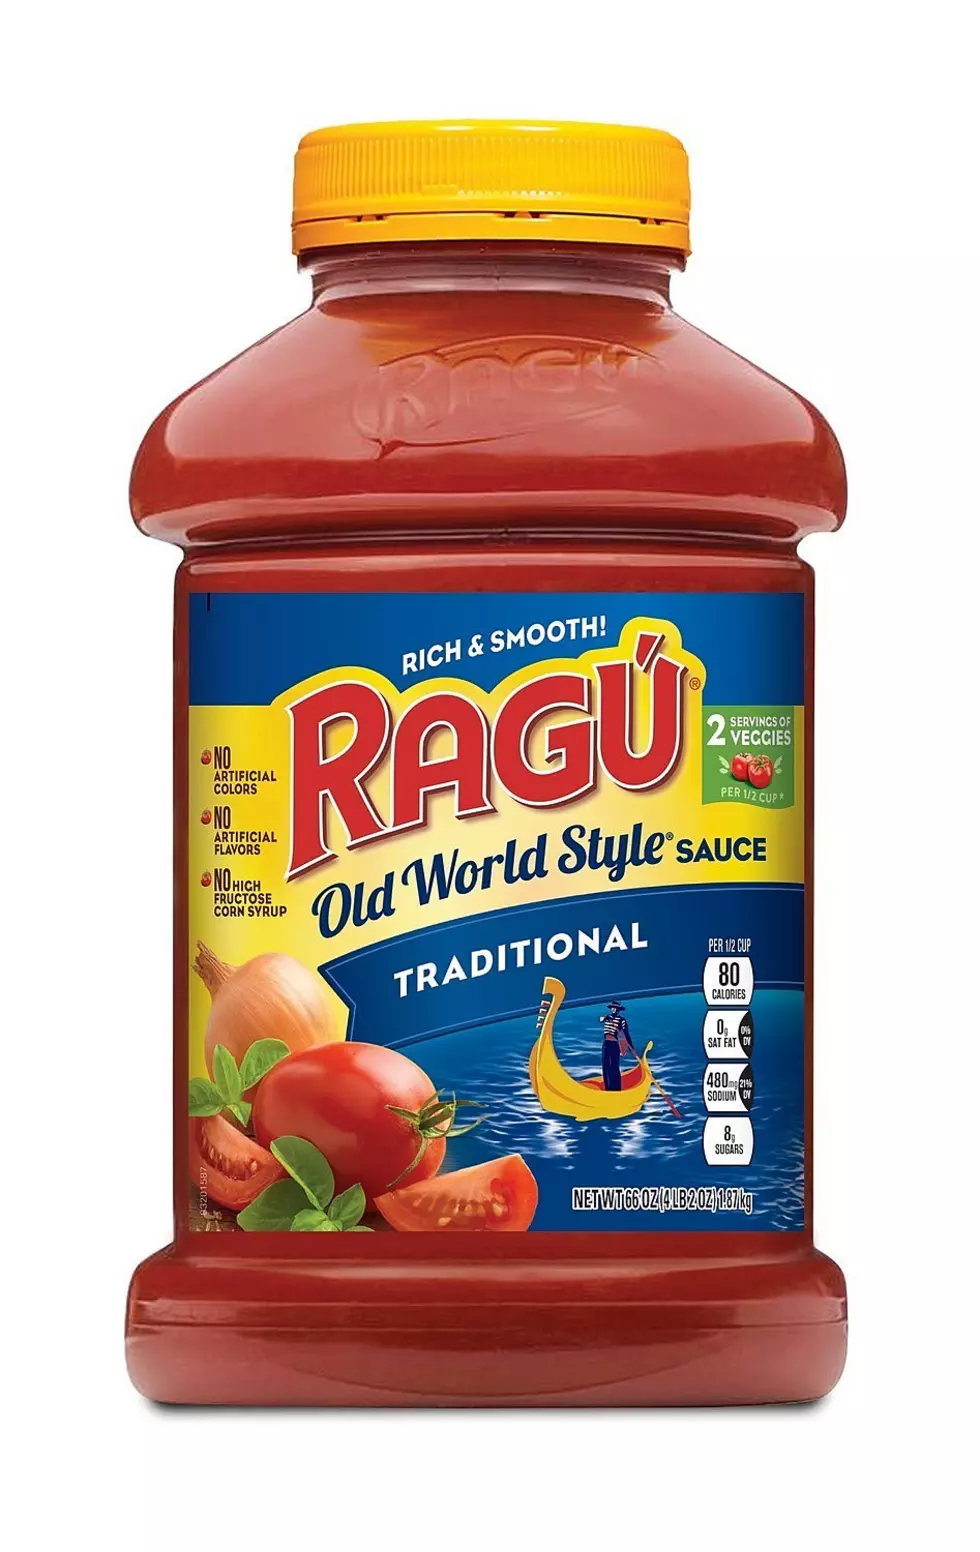 Ragu Pasta Sauces Recalled